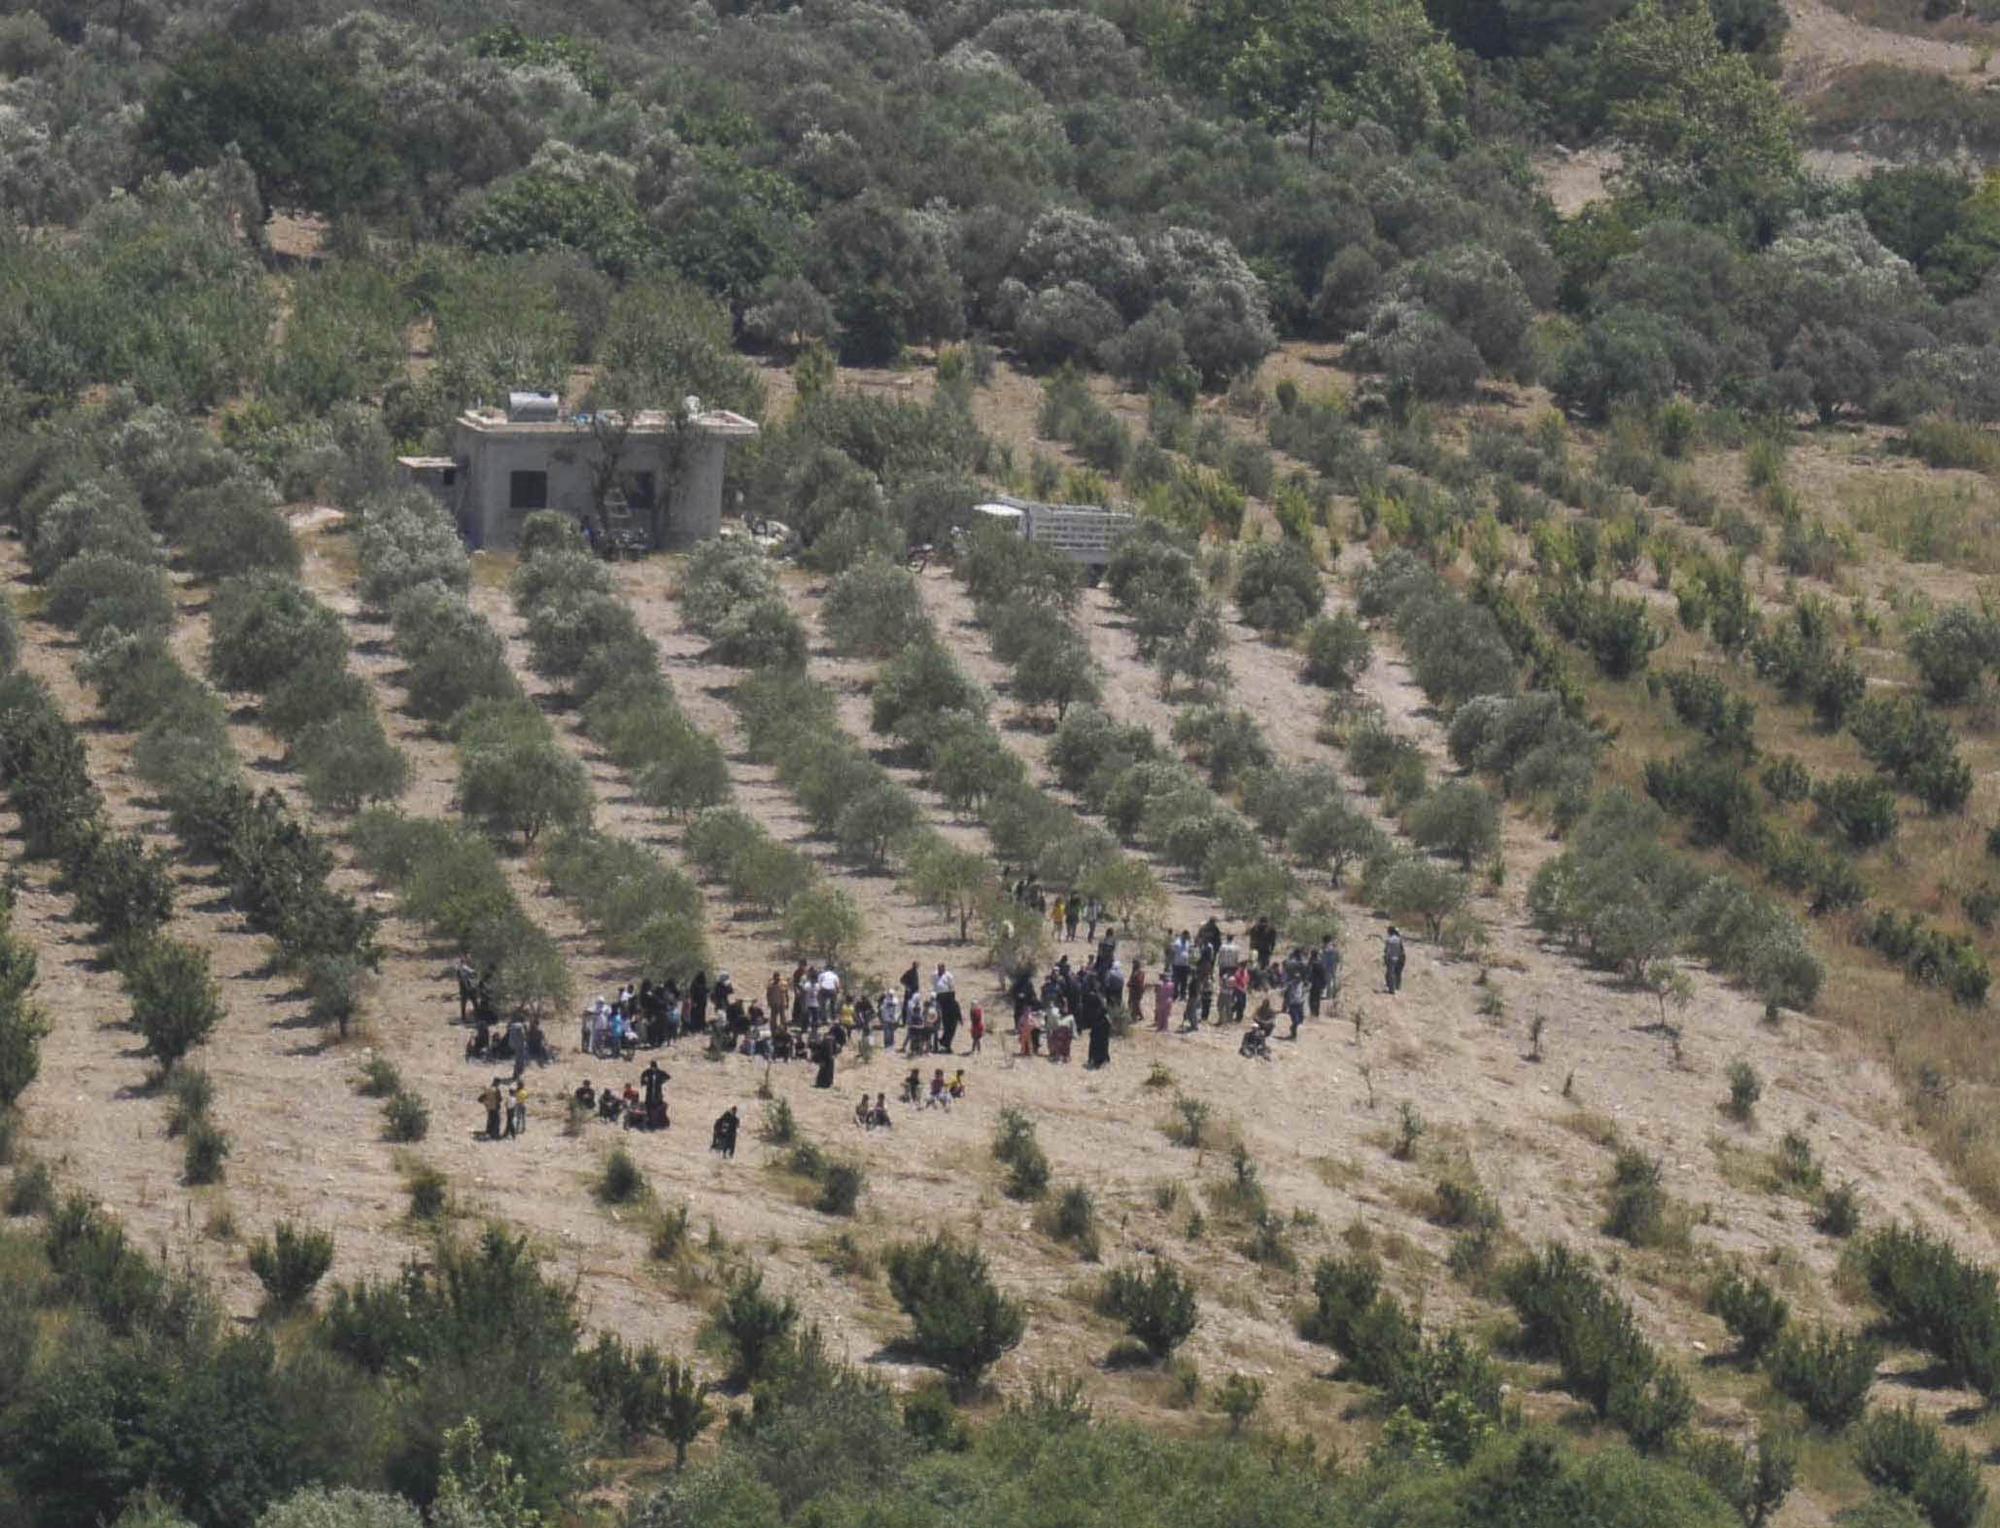 Mercredi, des Syriens attendaient sur une aire agricole de pouvoir passer la frontière turque pour fuir une vaste opération de répression redoutée par la population. [REUTERS - Ismihan Ozguven]